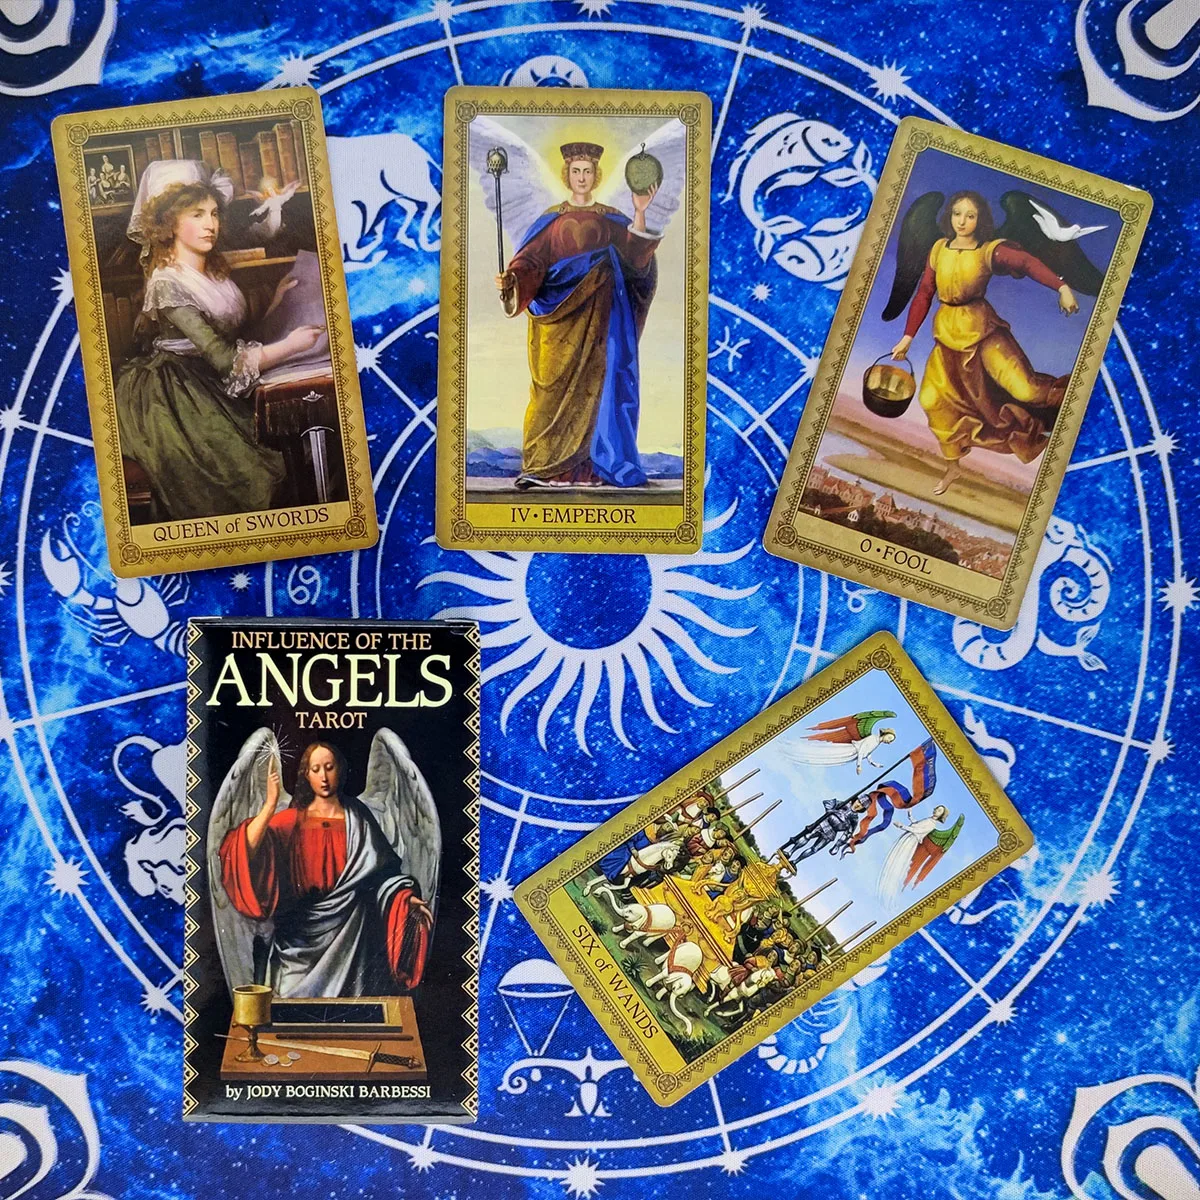 

Картинки с изображением влияния ангелов Таро, колода с изображением пророчества, гадания, версия на английском языке, диагональ 78 листов/ко...